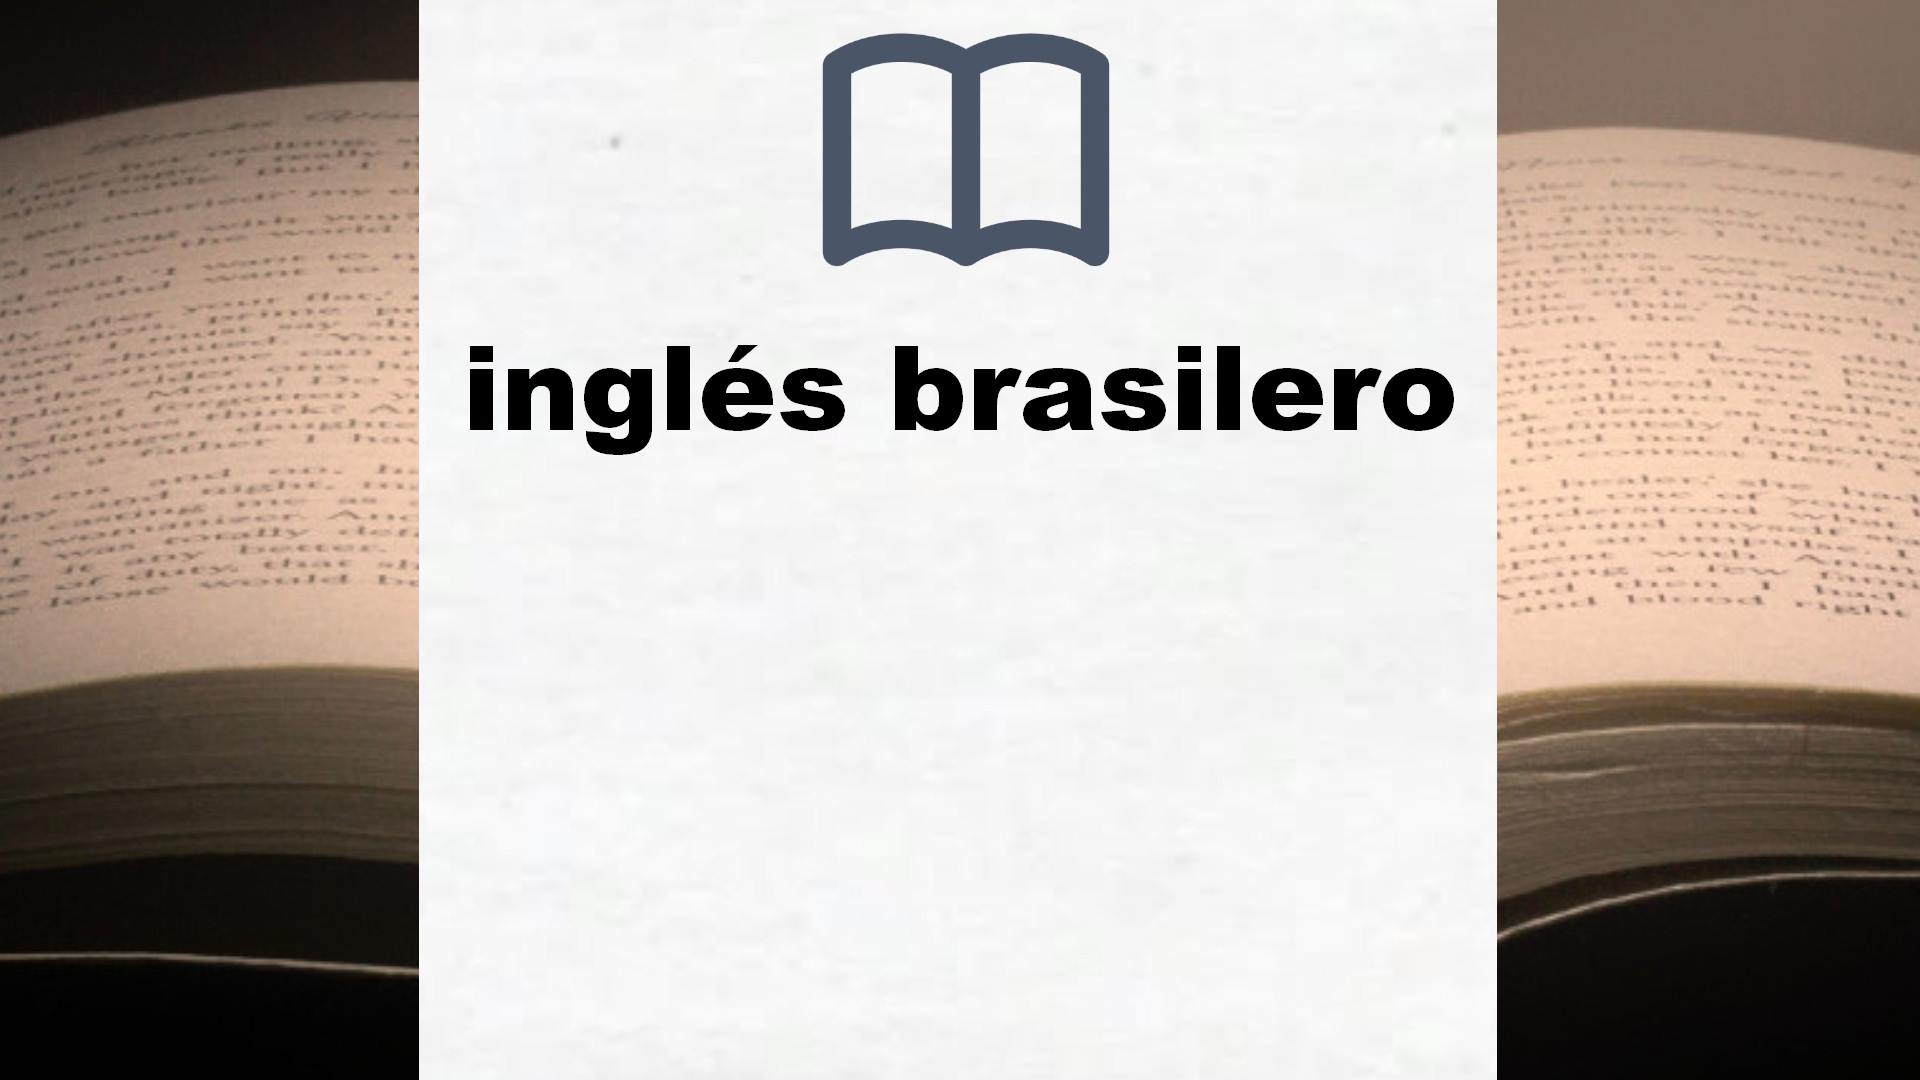 Libros sobre inglés brasilero